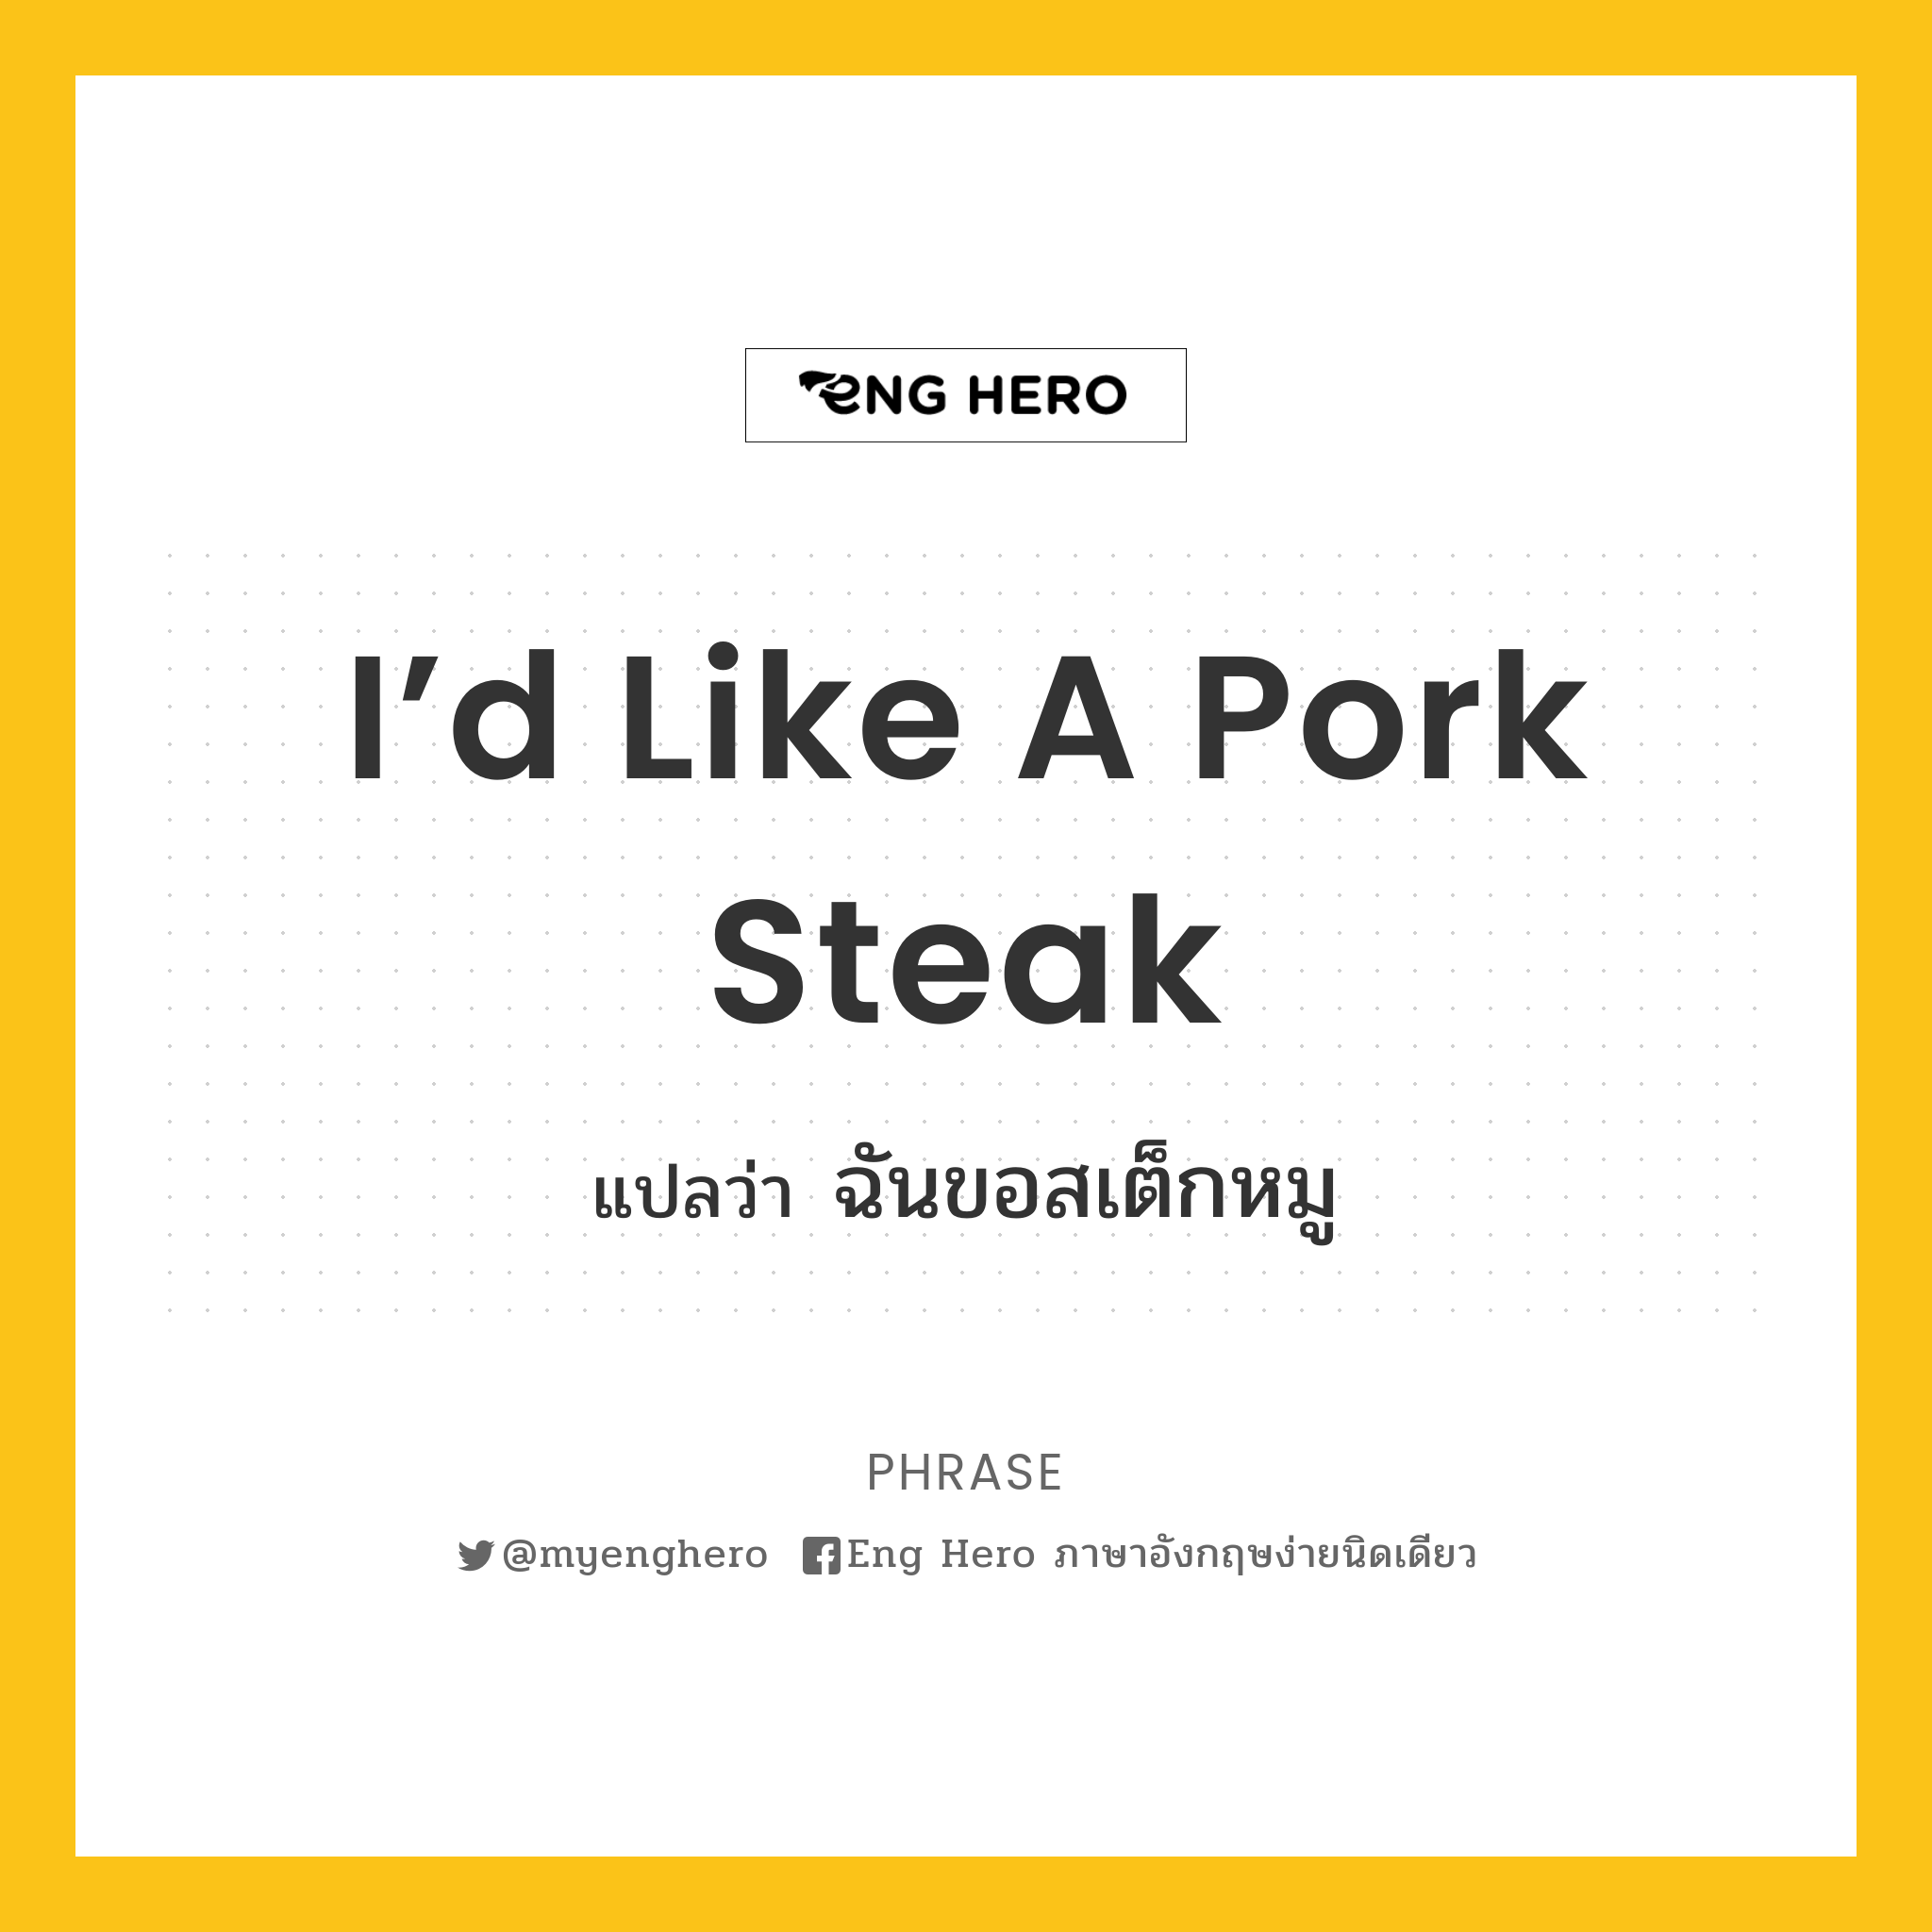 I’d like a pork steak